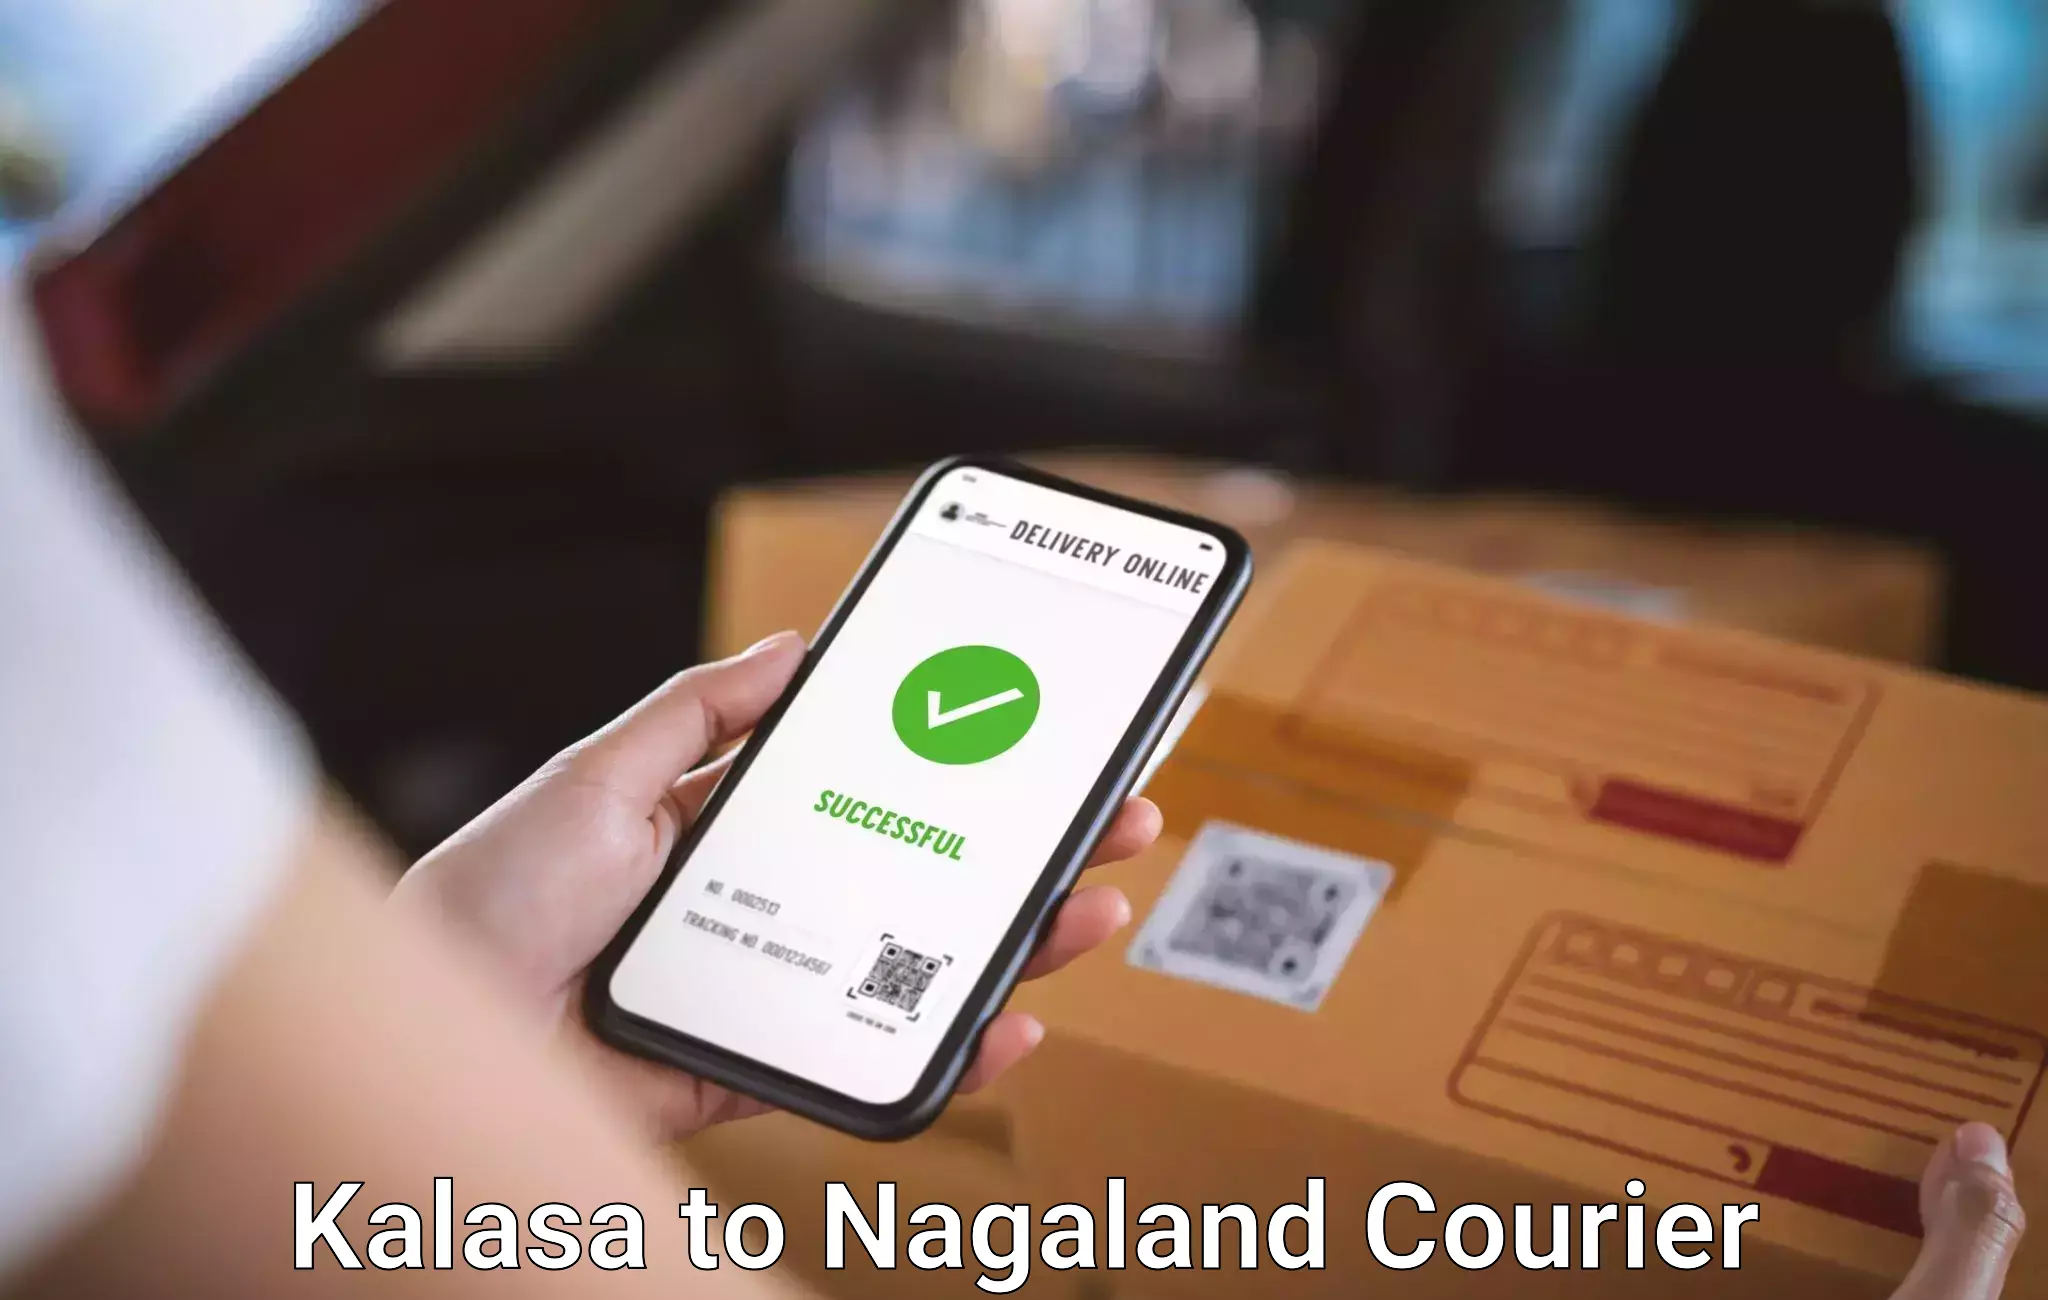 Baggage transport professionals Kalasa to NIT Nagaland